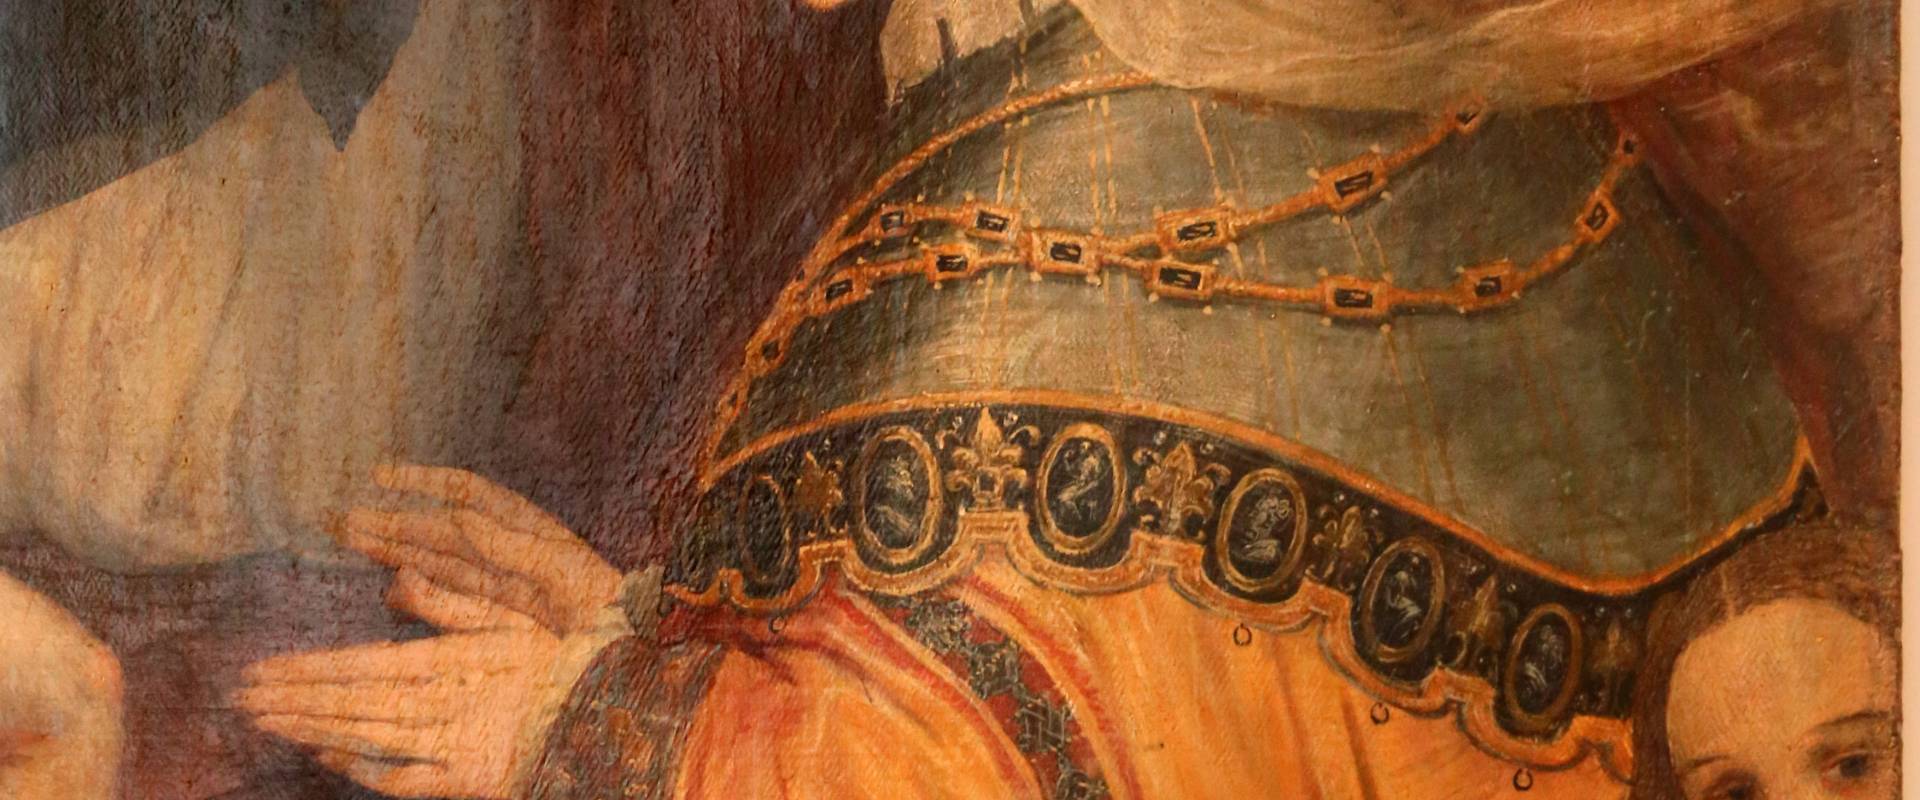 Pier paolo menzocchi, madonna del rosario, 1585 ca., da s. giacomo in s. domenico a forlì 06 foto di Sailko